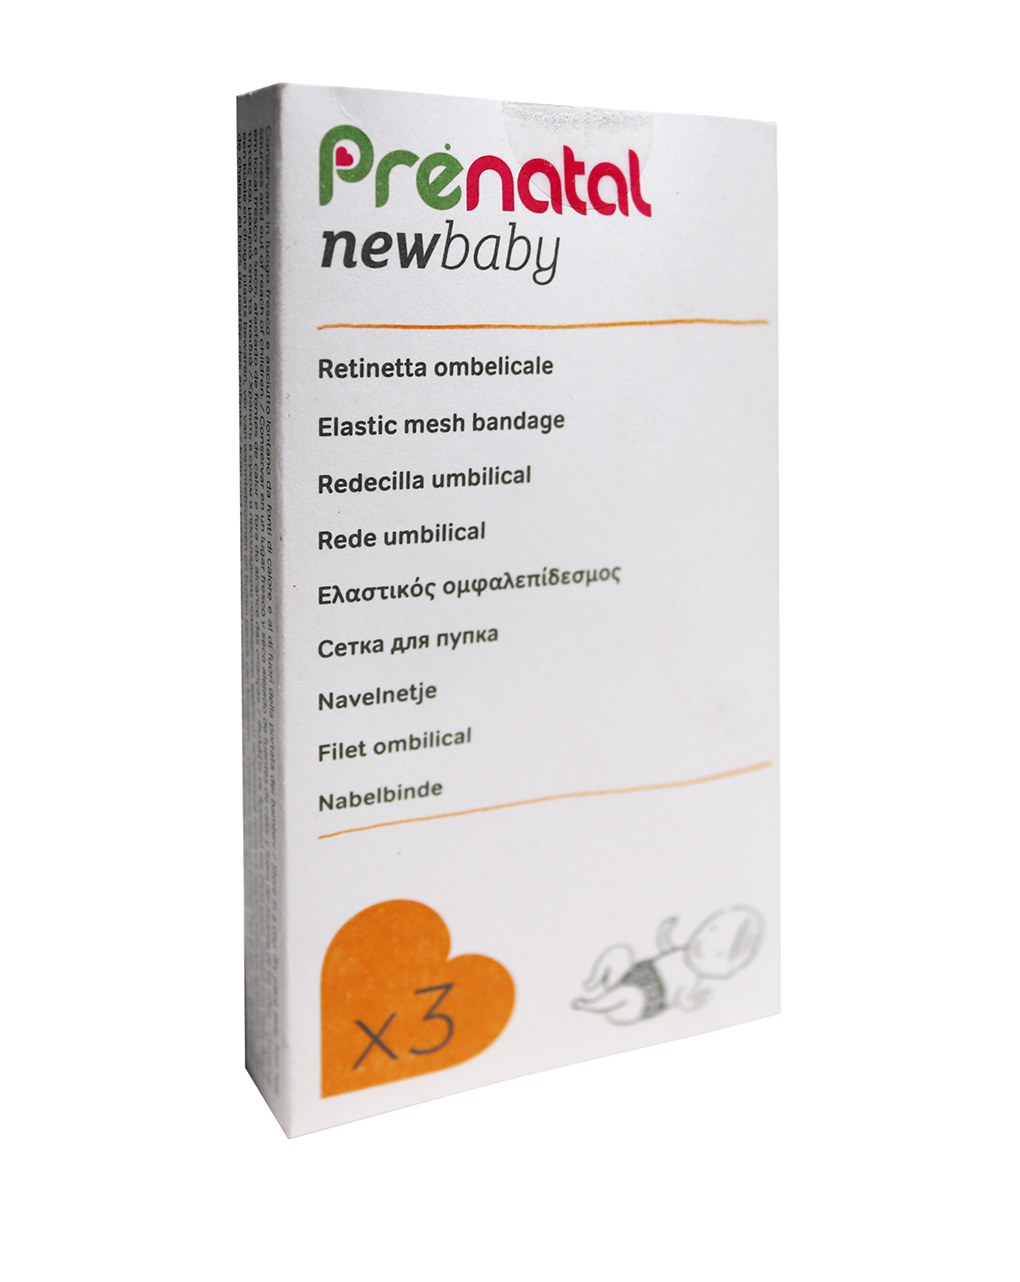 Redecilla umbilical - Prénatal